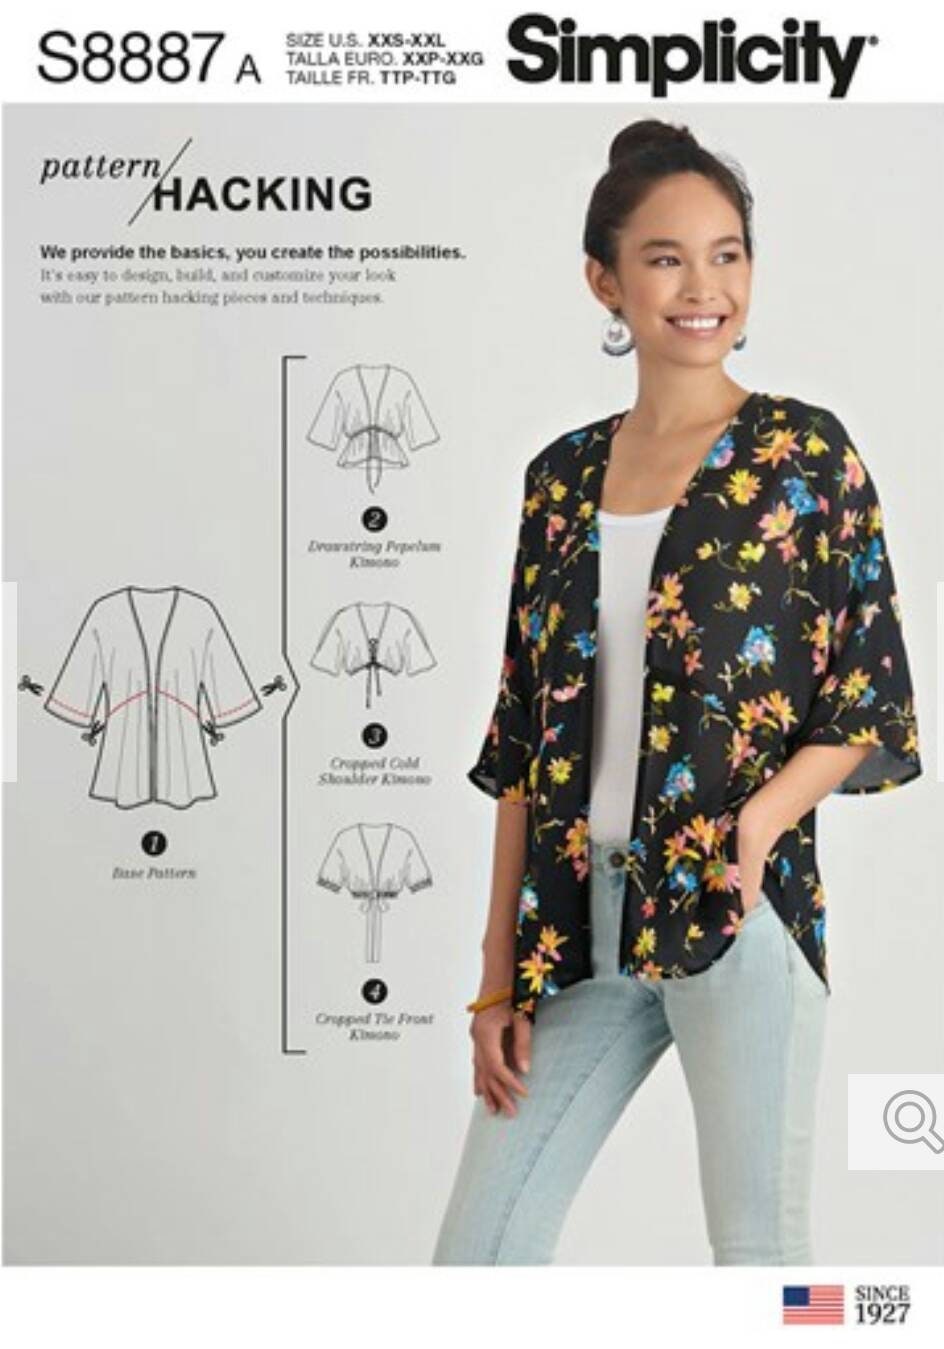 Kimono Sewing Pattern Simplicity S8887 Kimonos Sizes XXS-XXL New